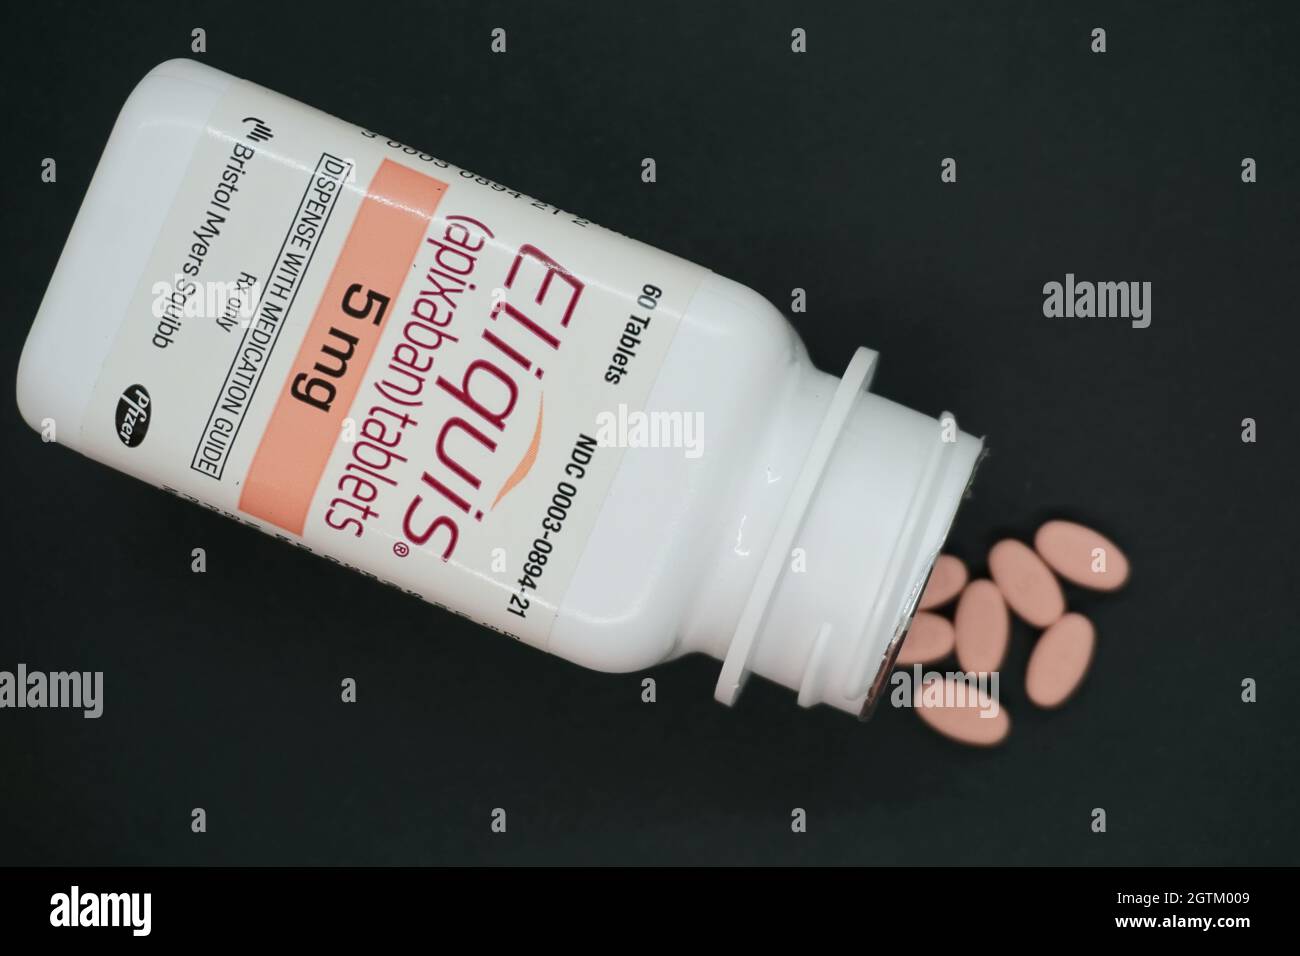 Flasche Eliquis 5mg Tabletten - ein verschreibungspflichtiges blutdünneres  Medikament Stockfotografie - Alamy